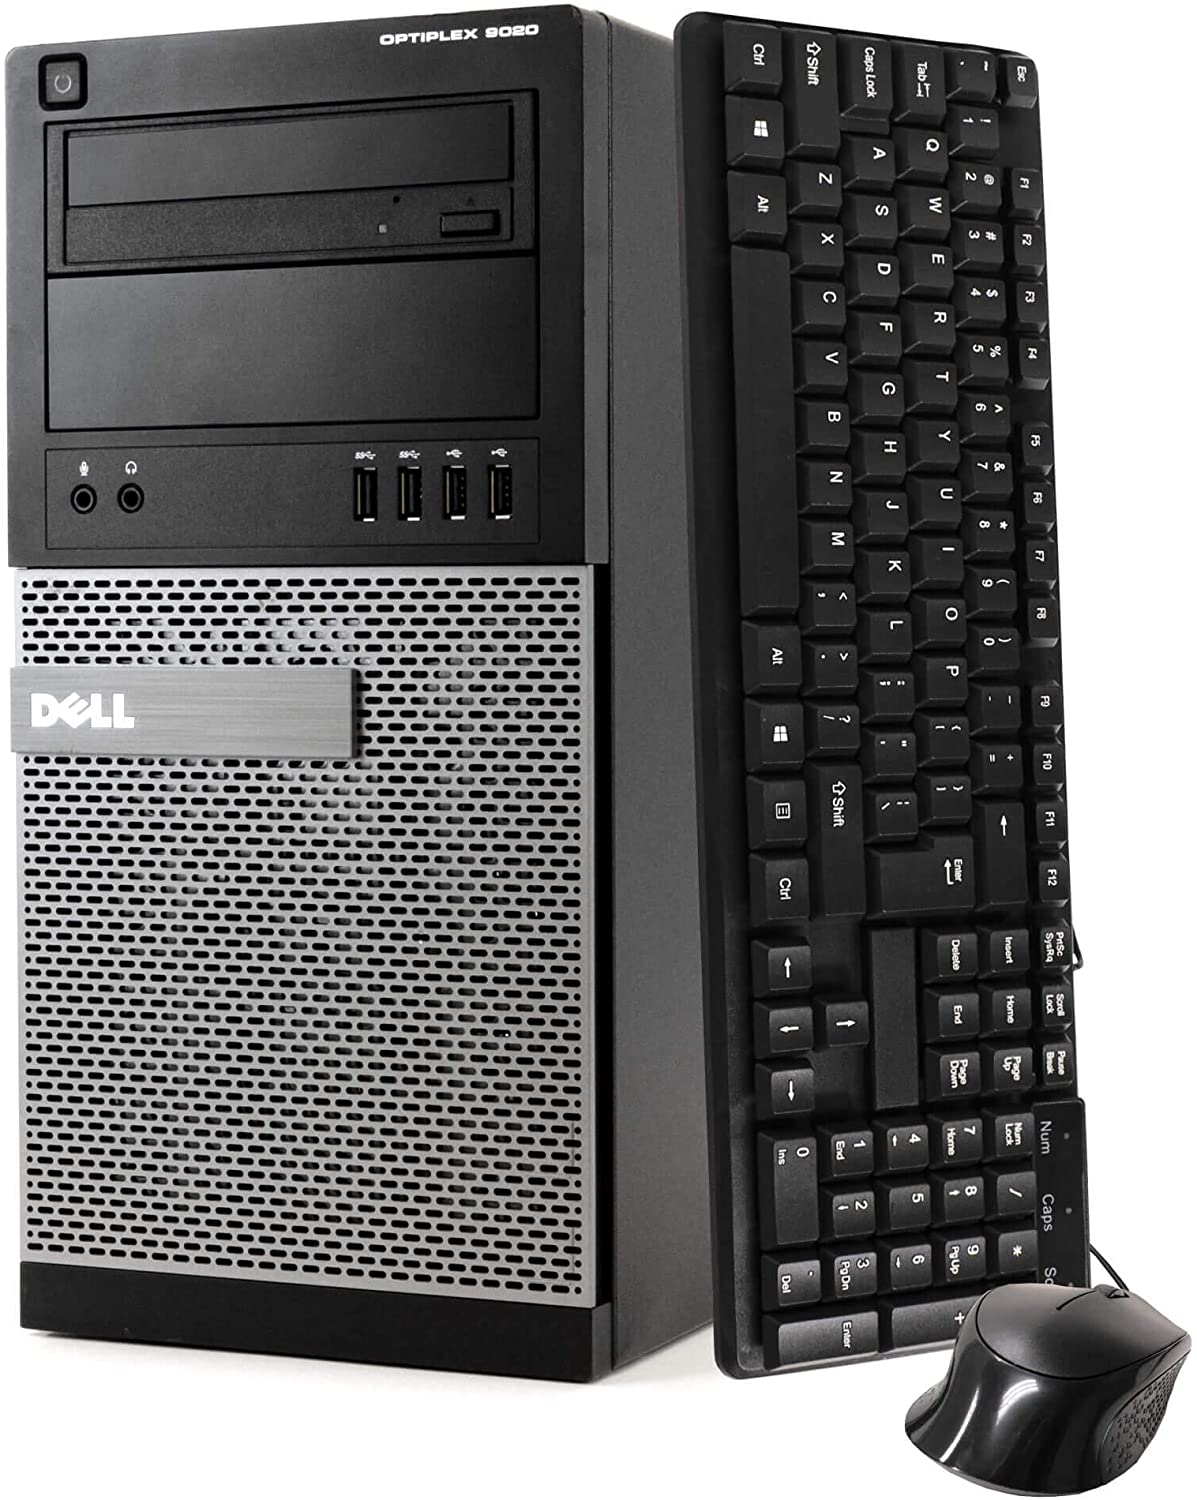 RENEWED Tower Computer Dell Optiplex 7020, Intel Quad Core i7-4770